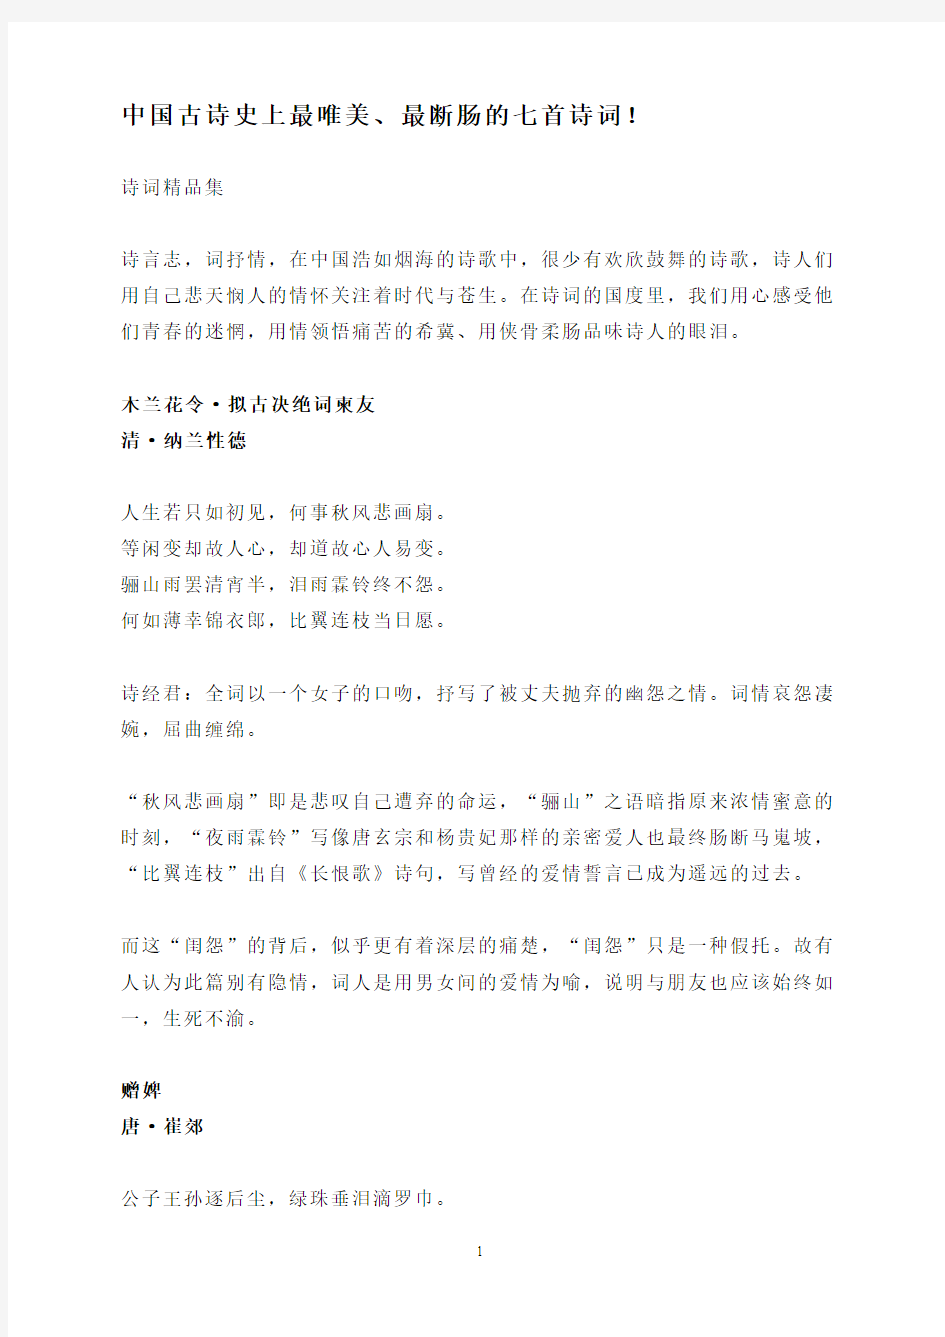 中国古诗史上最唯美、最断肠的七首诗词!